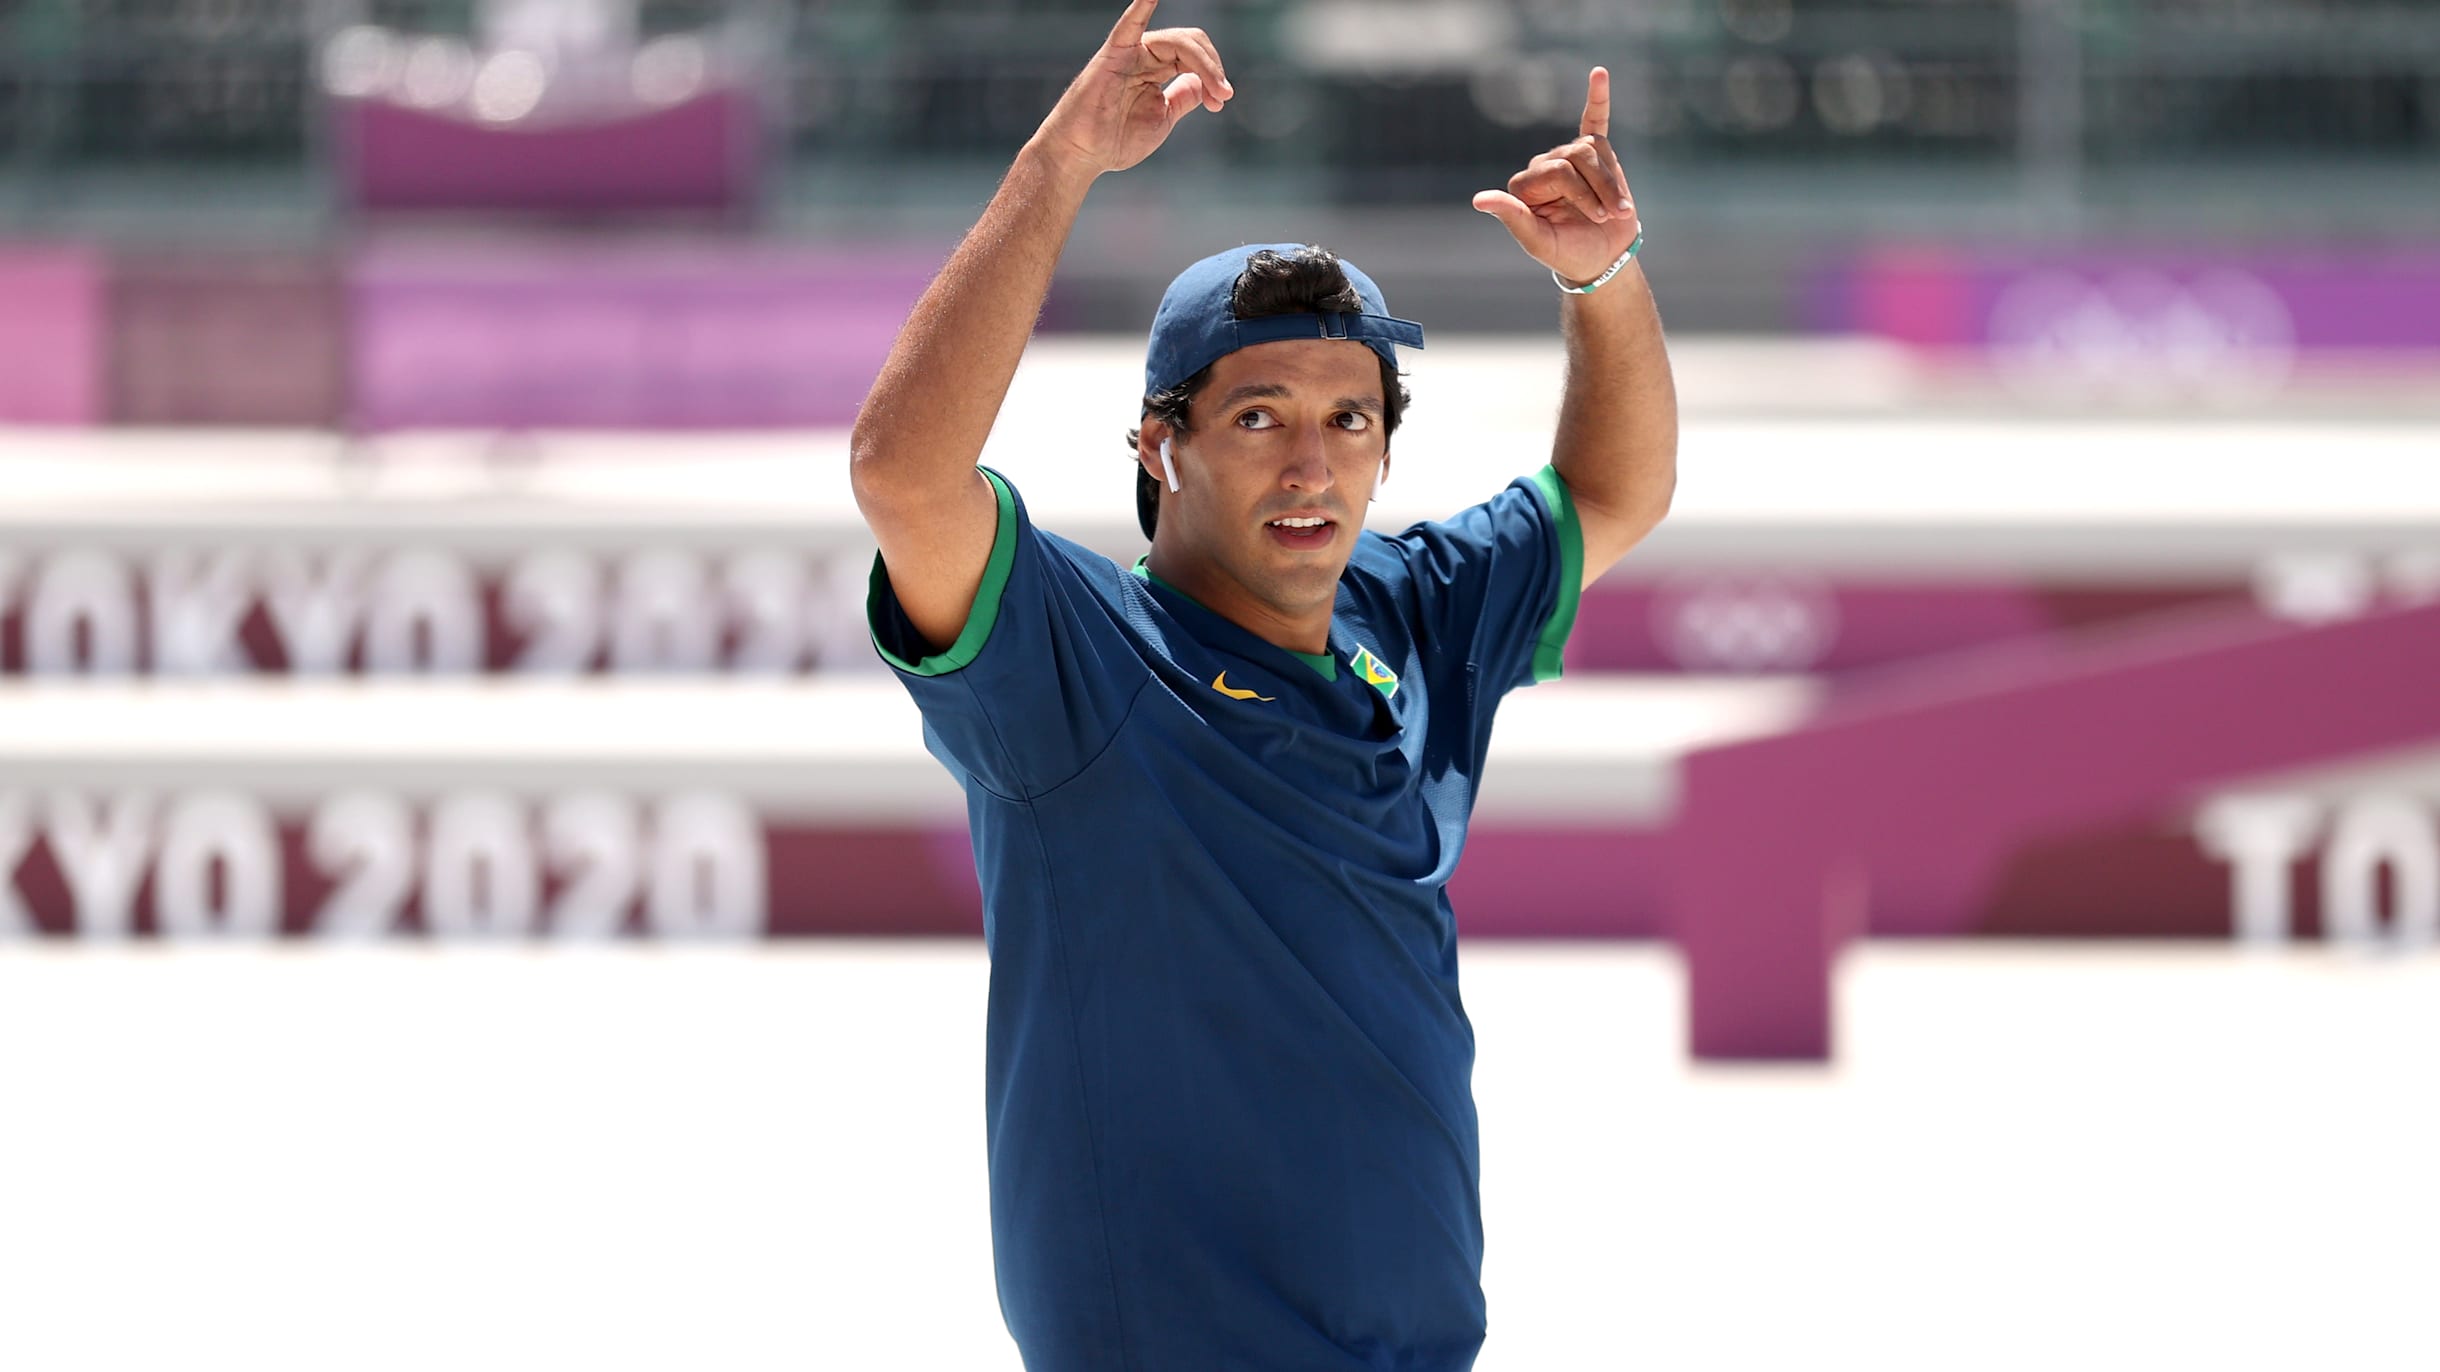 Kelvin Hoefler, do skate, garante a 1ª medalha do Brasil nos Jogos